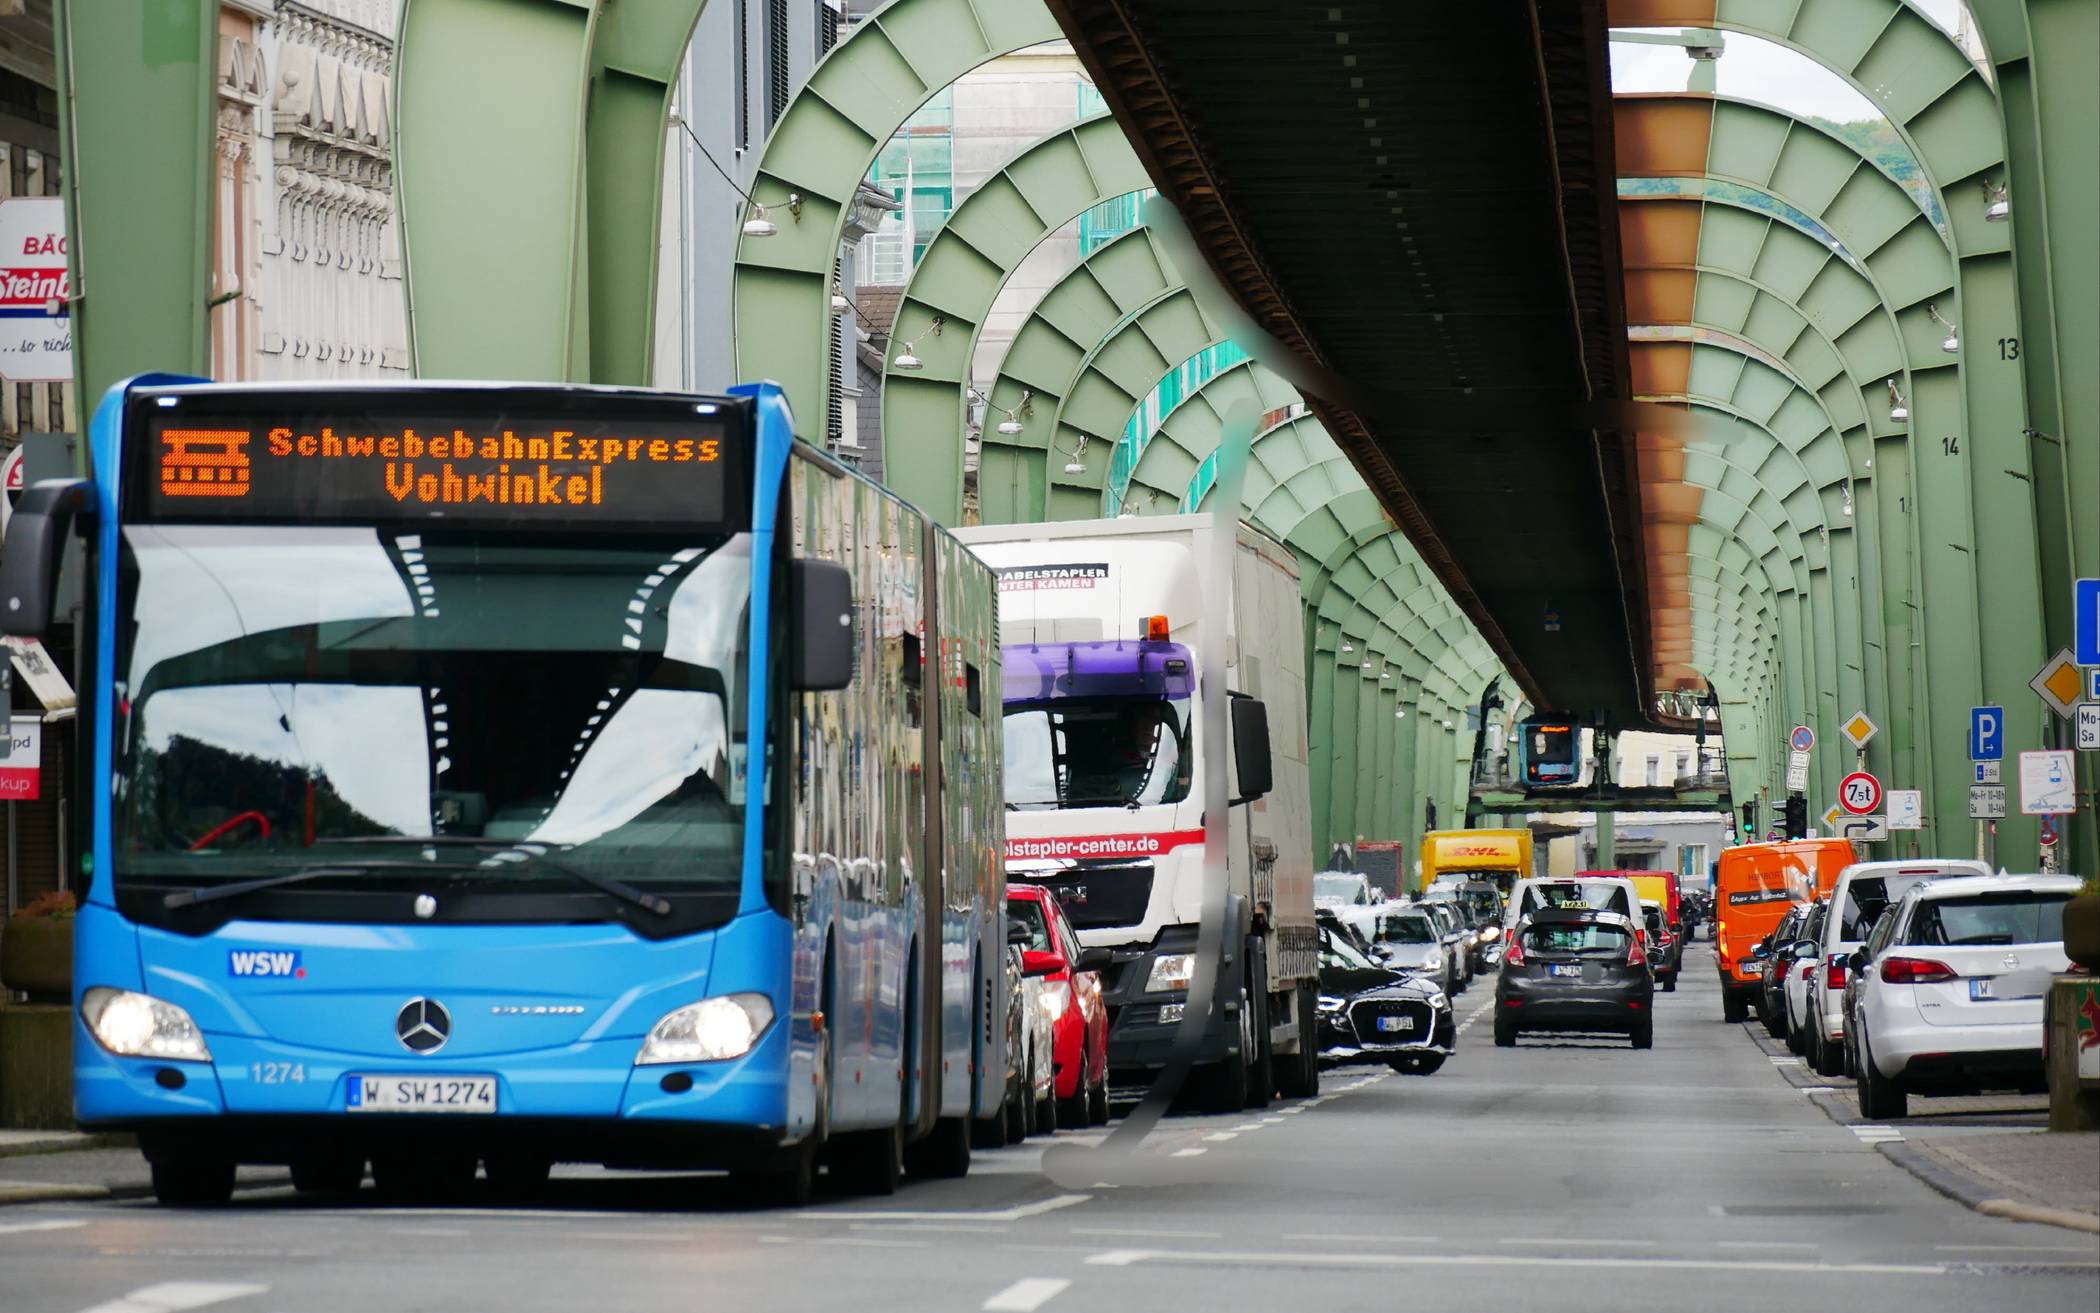 Stadt Wuppertal unterstützt Mobilitätsbefragung